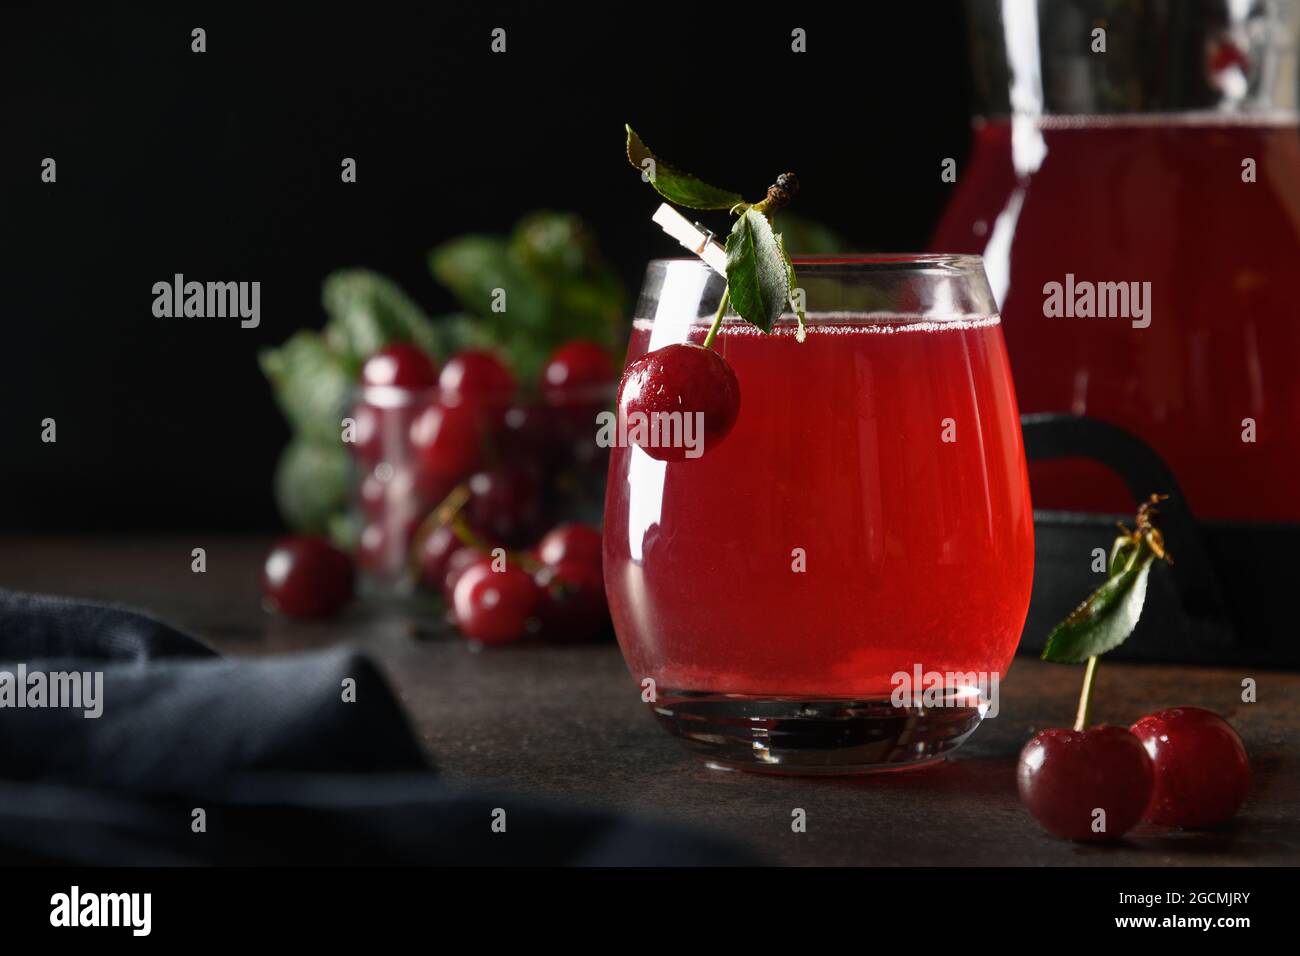 Compota casera fresca de cereza roja en cristal sobre fondo oscuro. Primer plano. Foto de stock